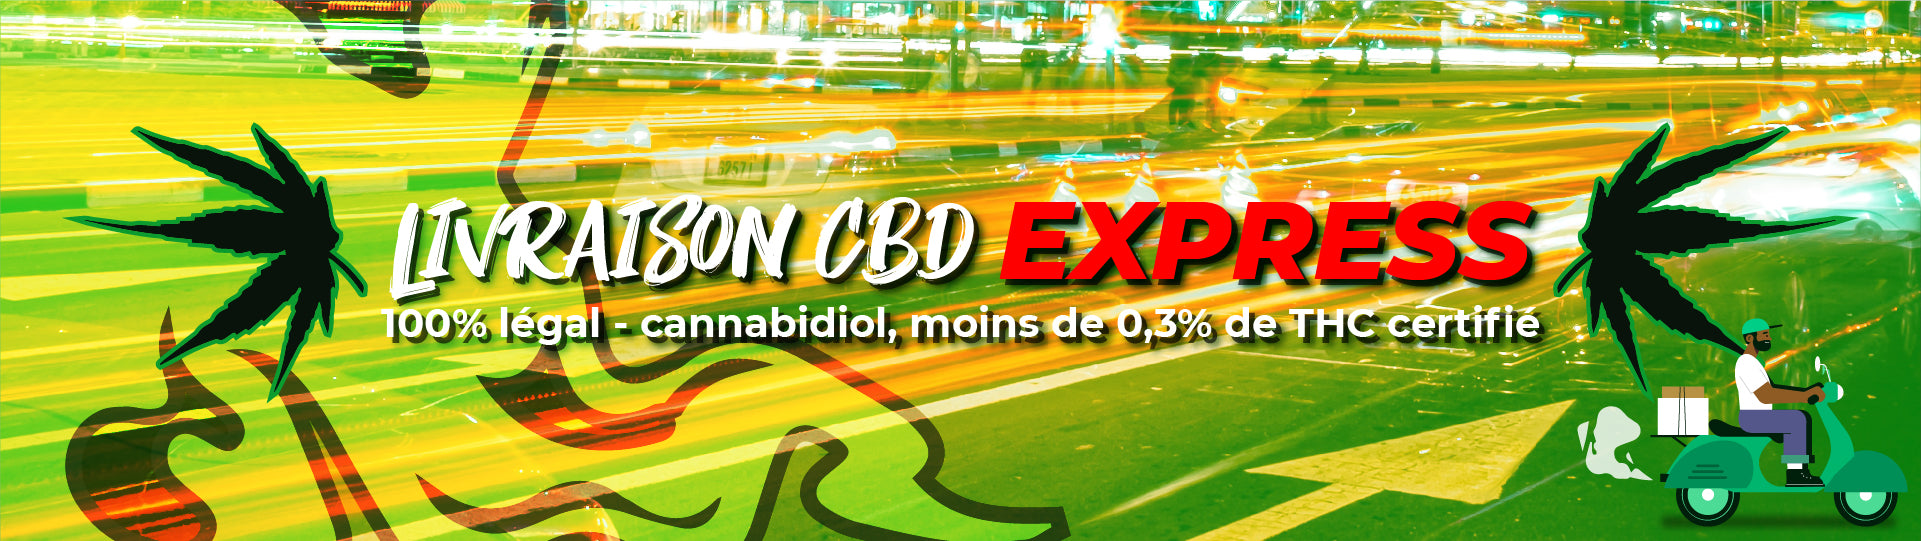 Livraison Express CBD - Livraison CBD Paris - Livraison CBD Ile-de-France